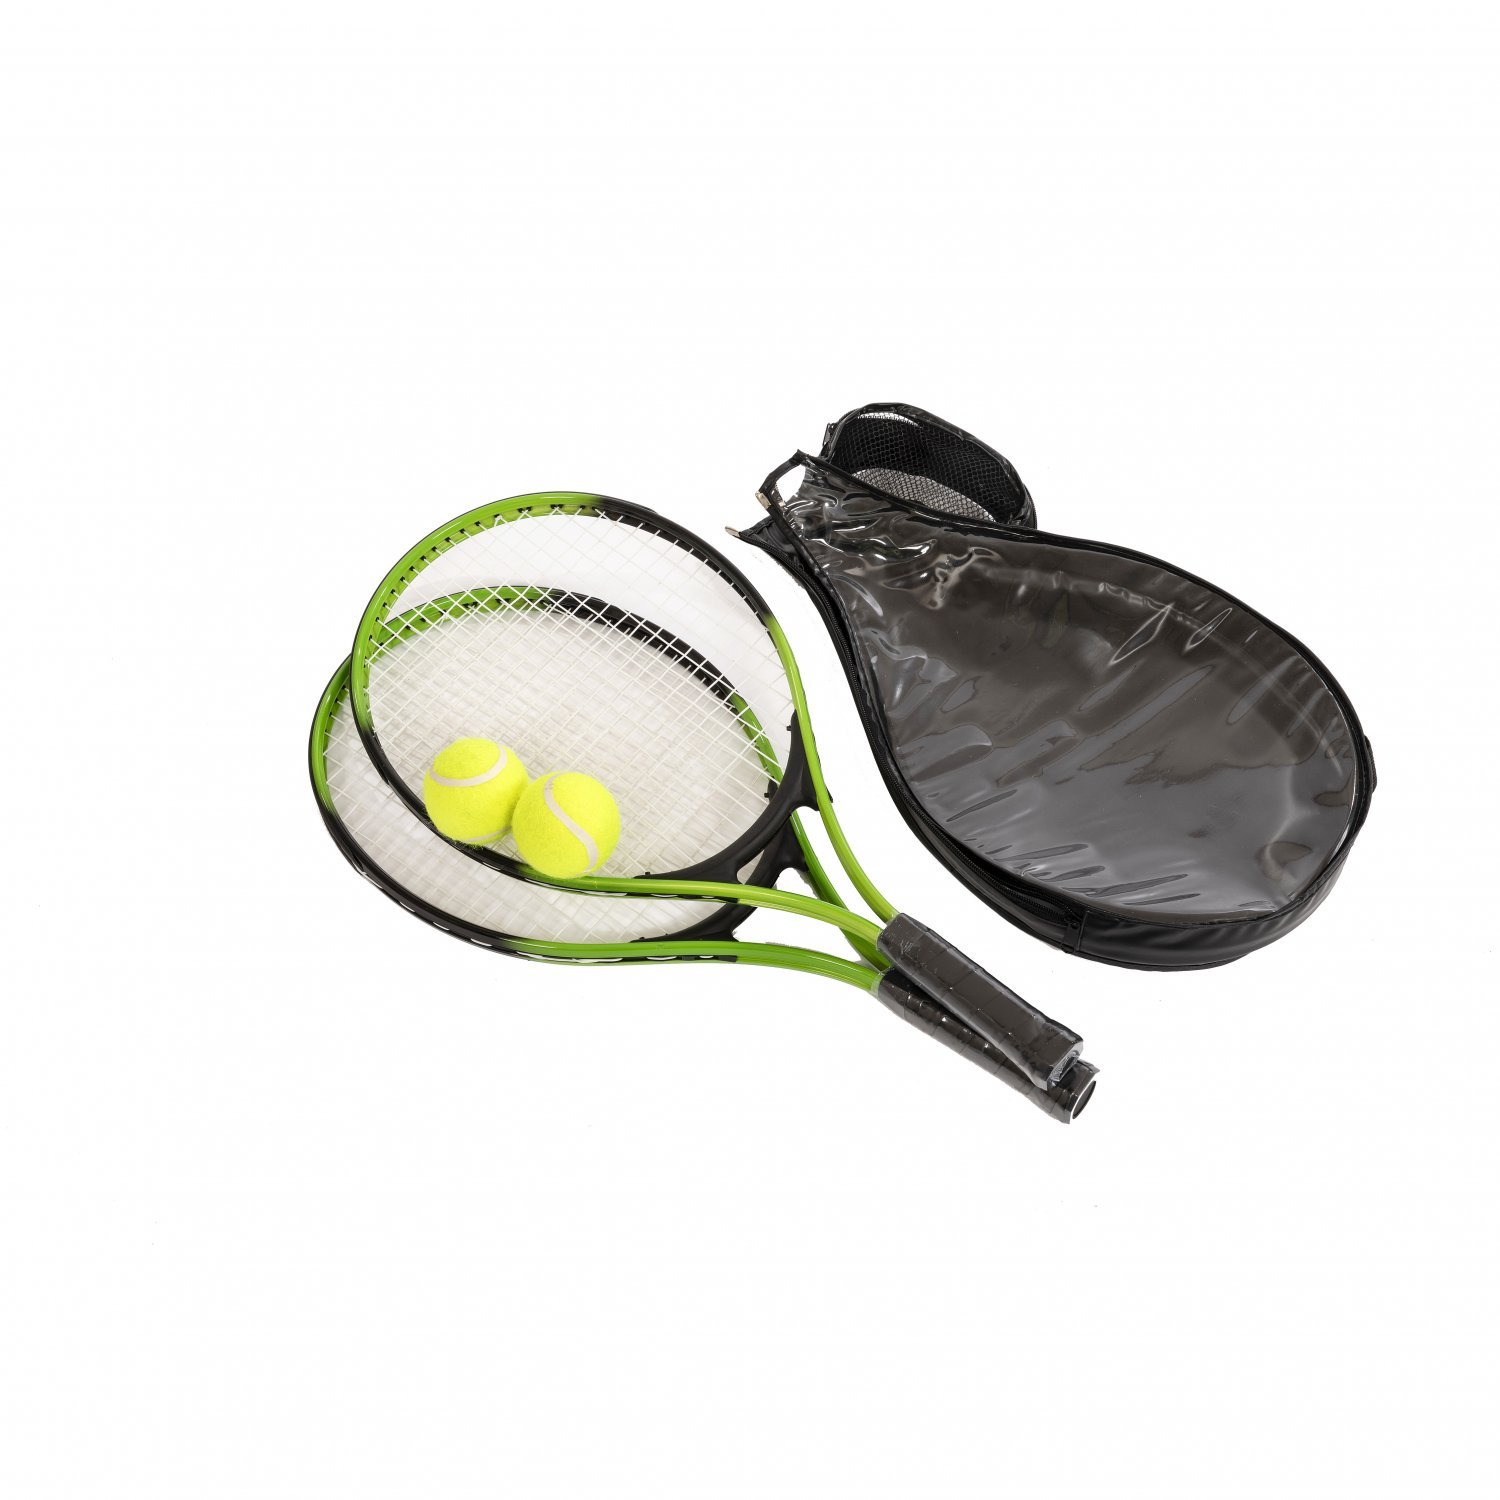 Ball & Carry Case Garden Games Aluminium 2 Player Tennis Rackets Set Racquets 